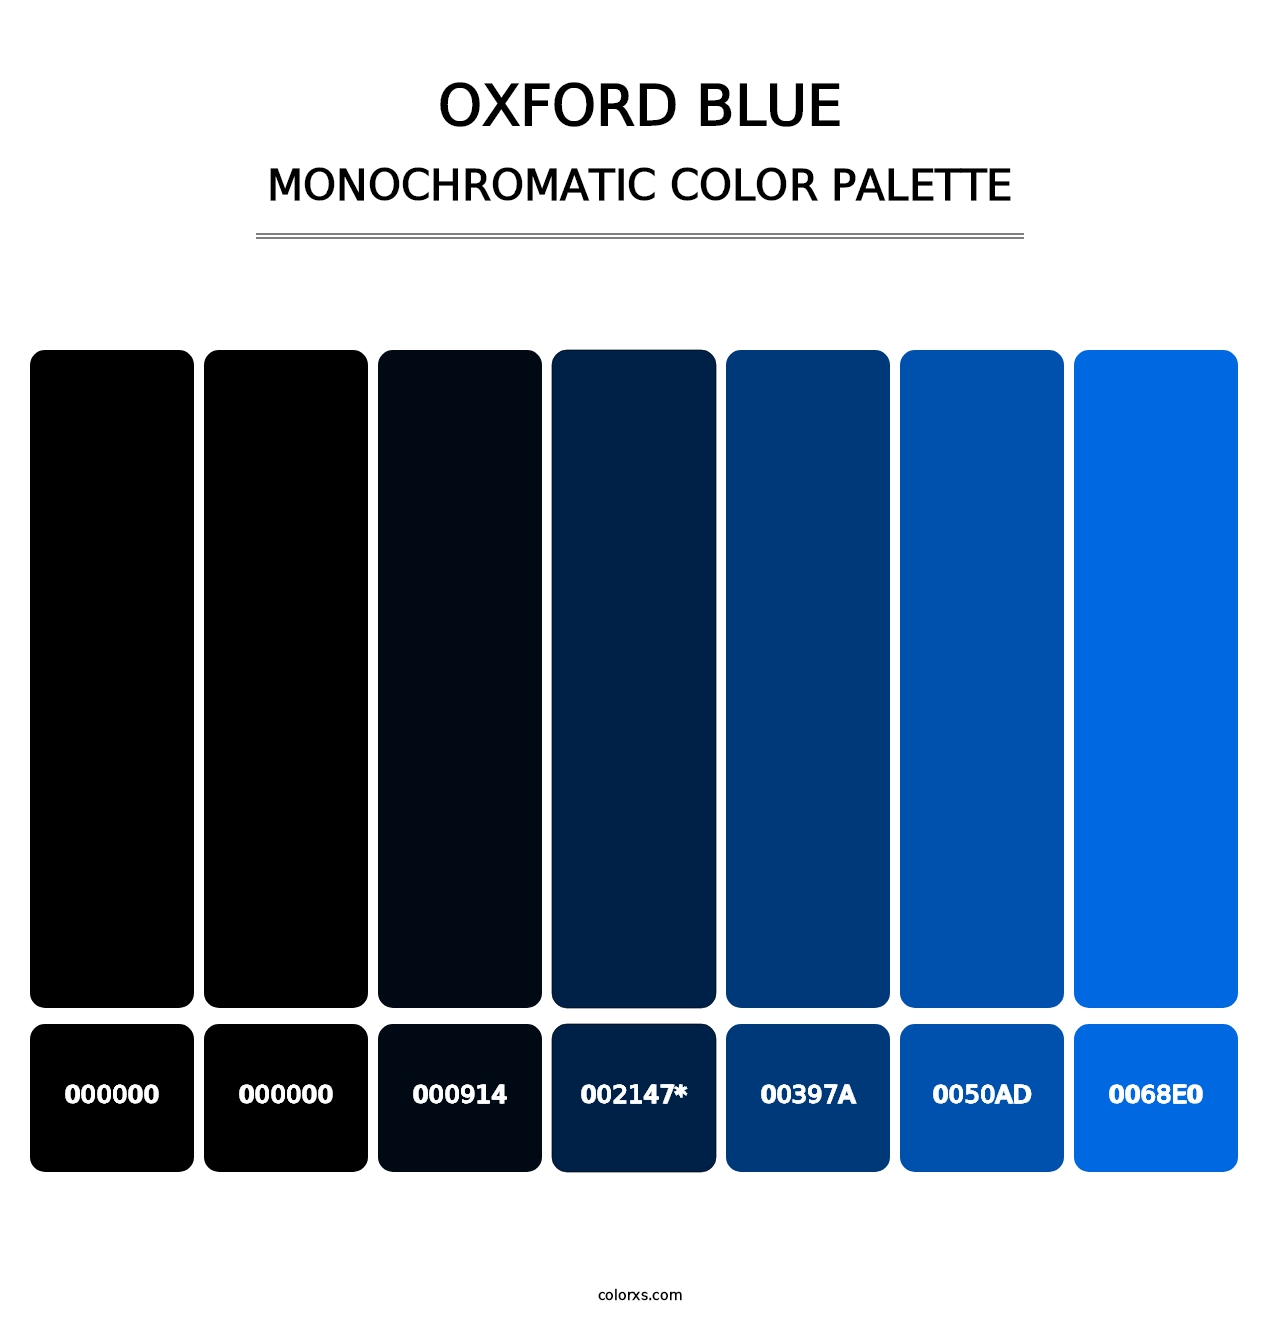 Oxford Blue - Monochromatic Color Palette